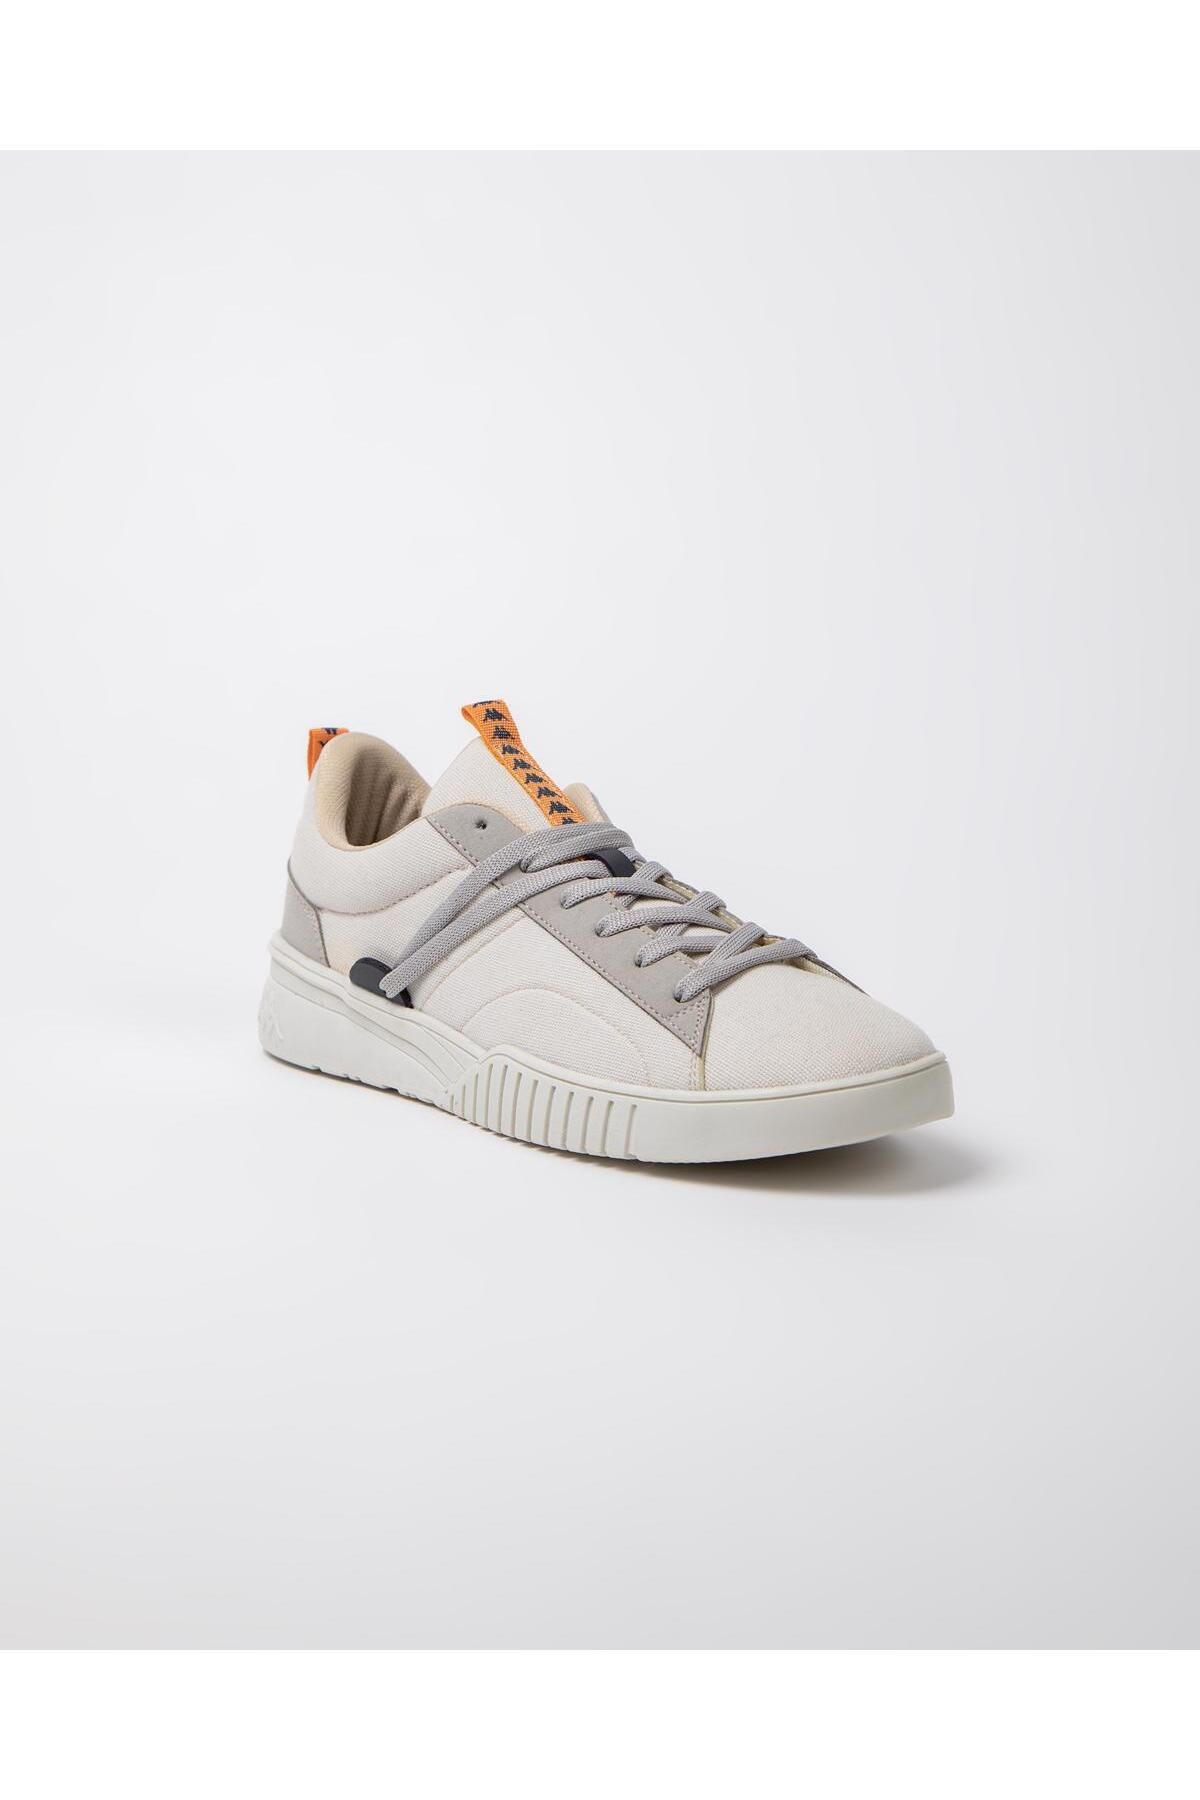 Kappa Sneakers - White Trendyol 